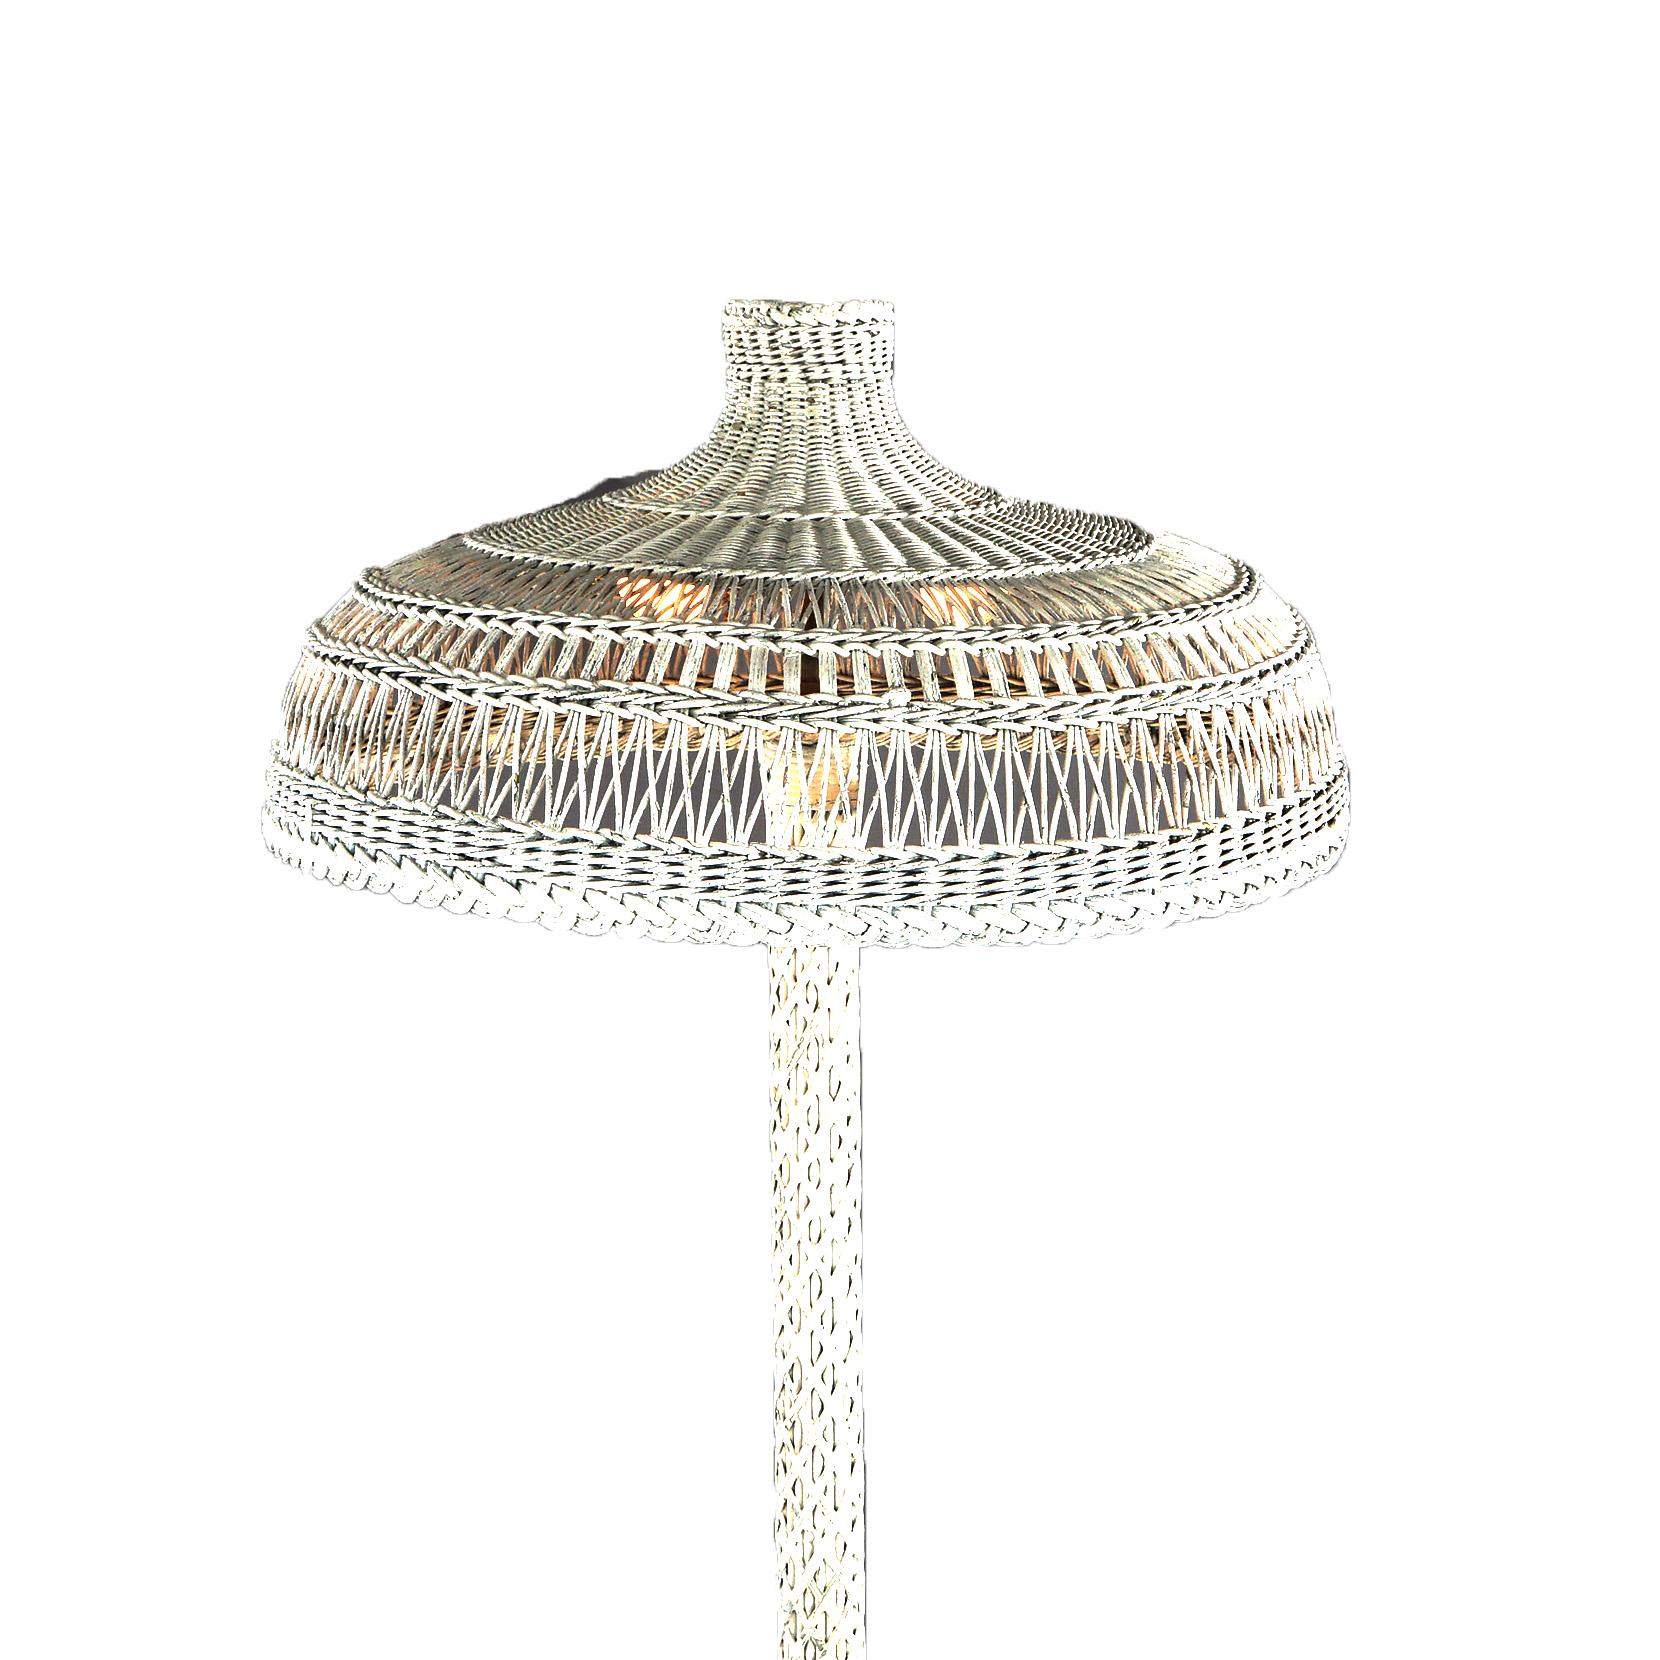 Antike Heywood Wakefield Wicker Triple-Light Stehlampe mit ausgestelltem Sockel und Kuppel Schatten, C1920

Maße - 71 